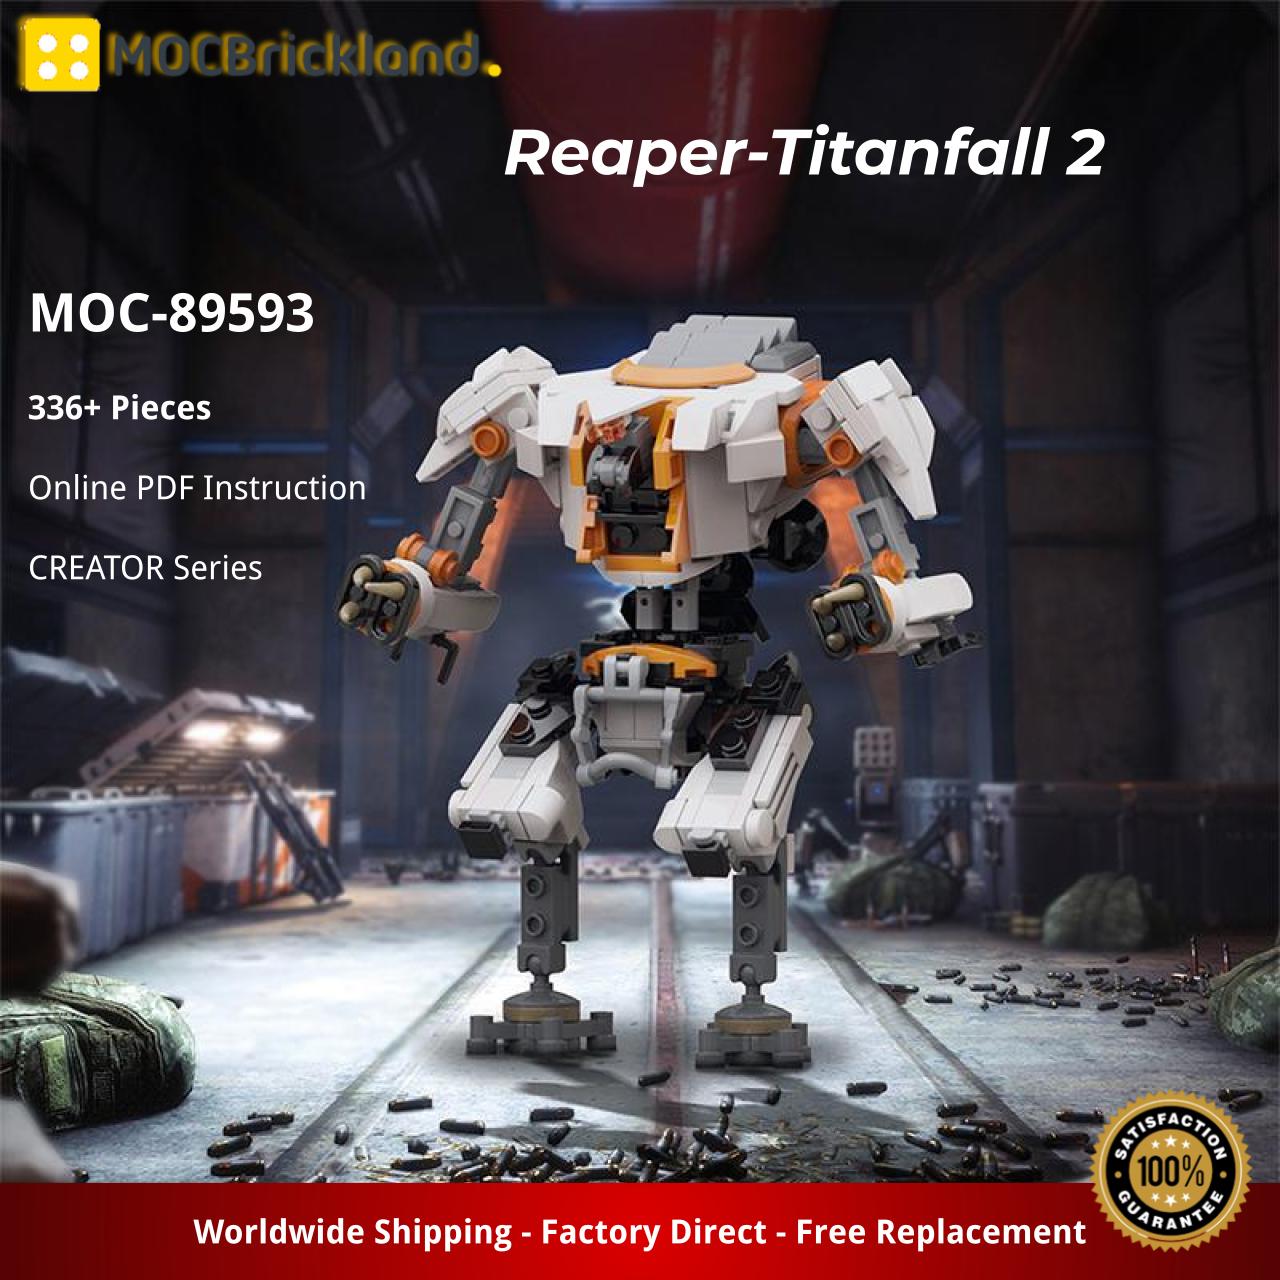 Creator MOC-89593 Reaper-Titanfall 2 MOCBRICKLAND